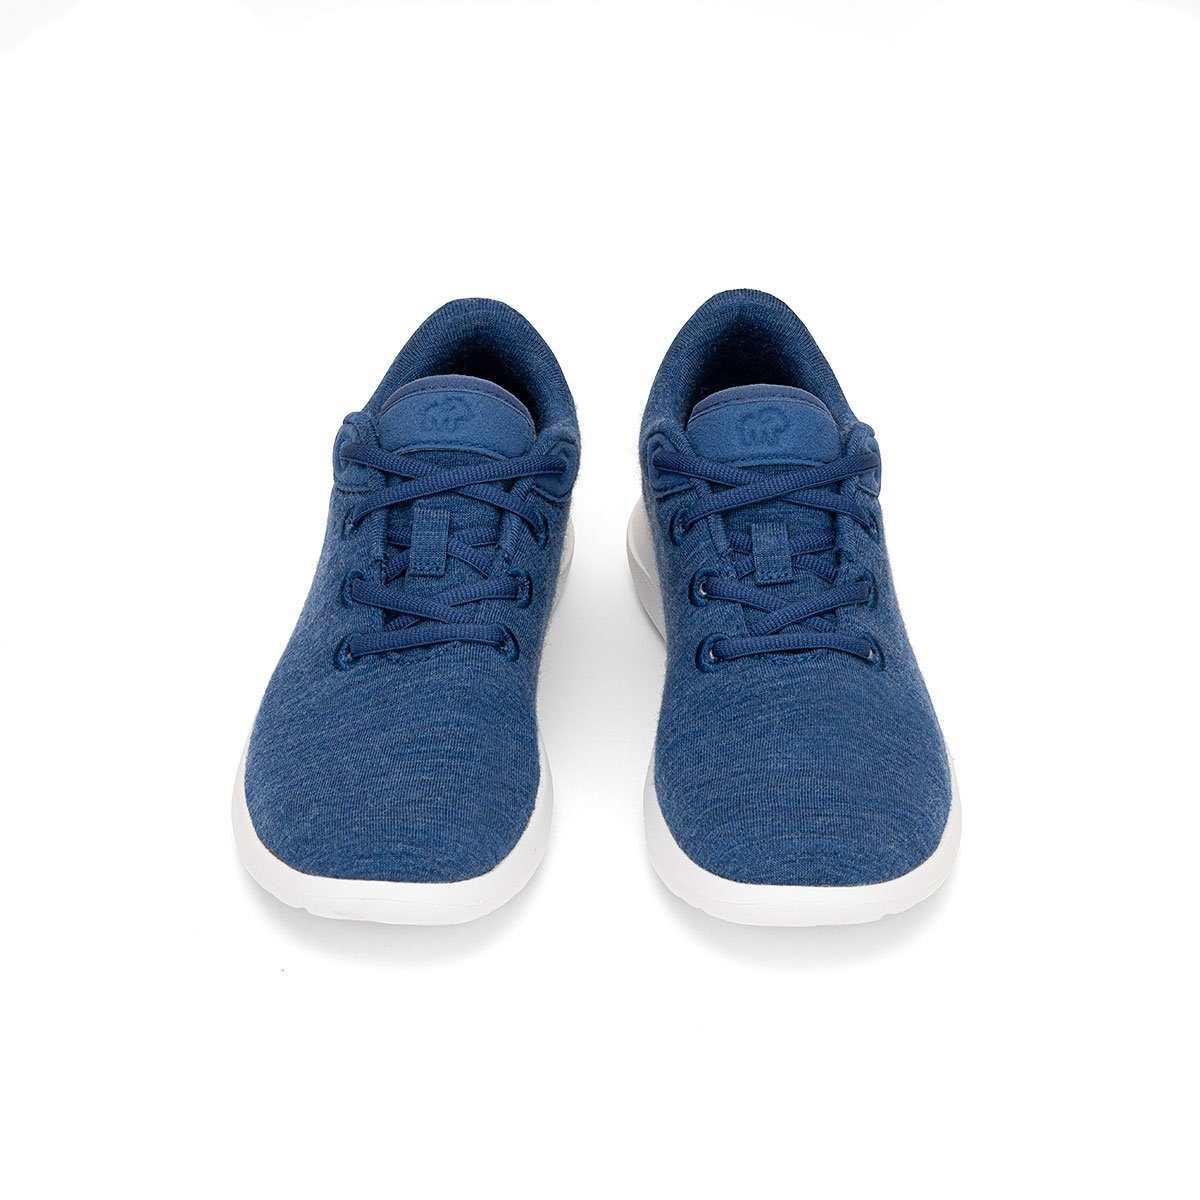 merinos - aus Sportschuhe Damen Bequeme blaue Sneaker Lace- jeansblau Schuhe Up, merinoshoes.de weicher Merinowolle atmungsaktive